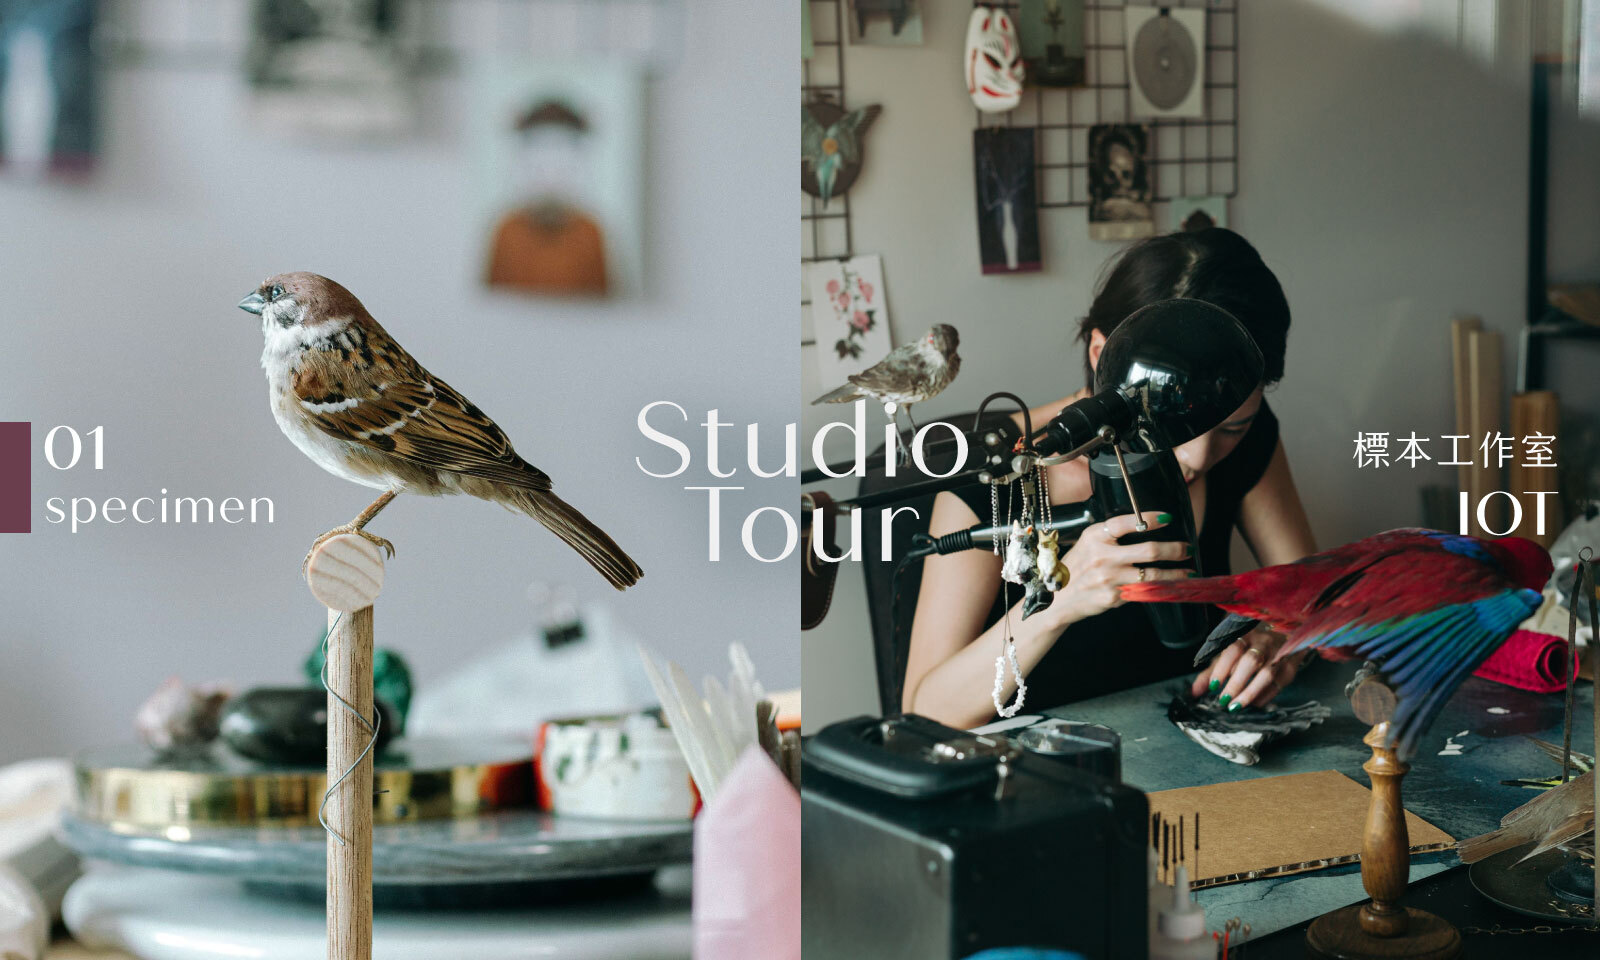 Studio Tour｜被鳥圍繞，卻安靜無聲──專訪標本工作室 IOT Gia